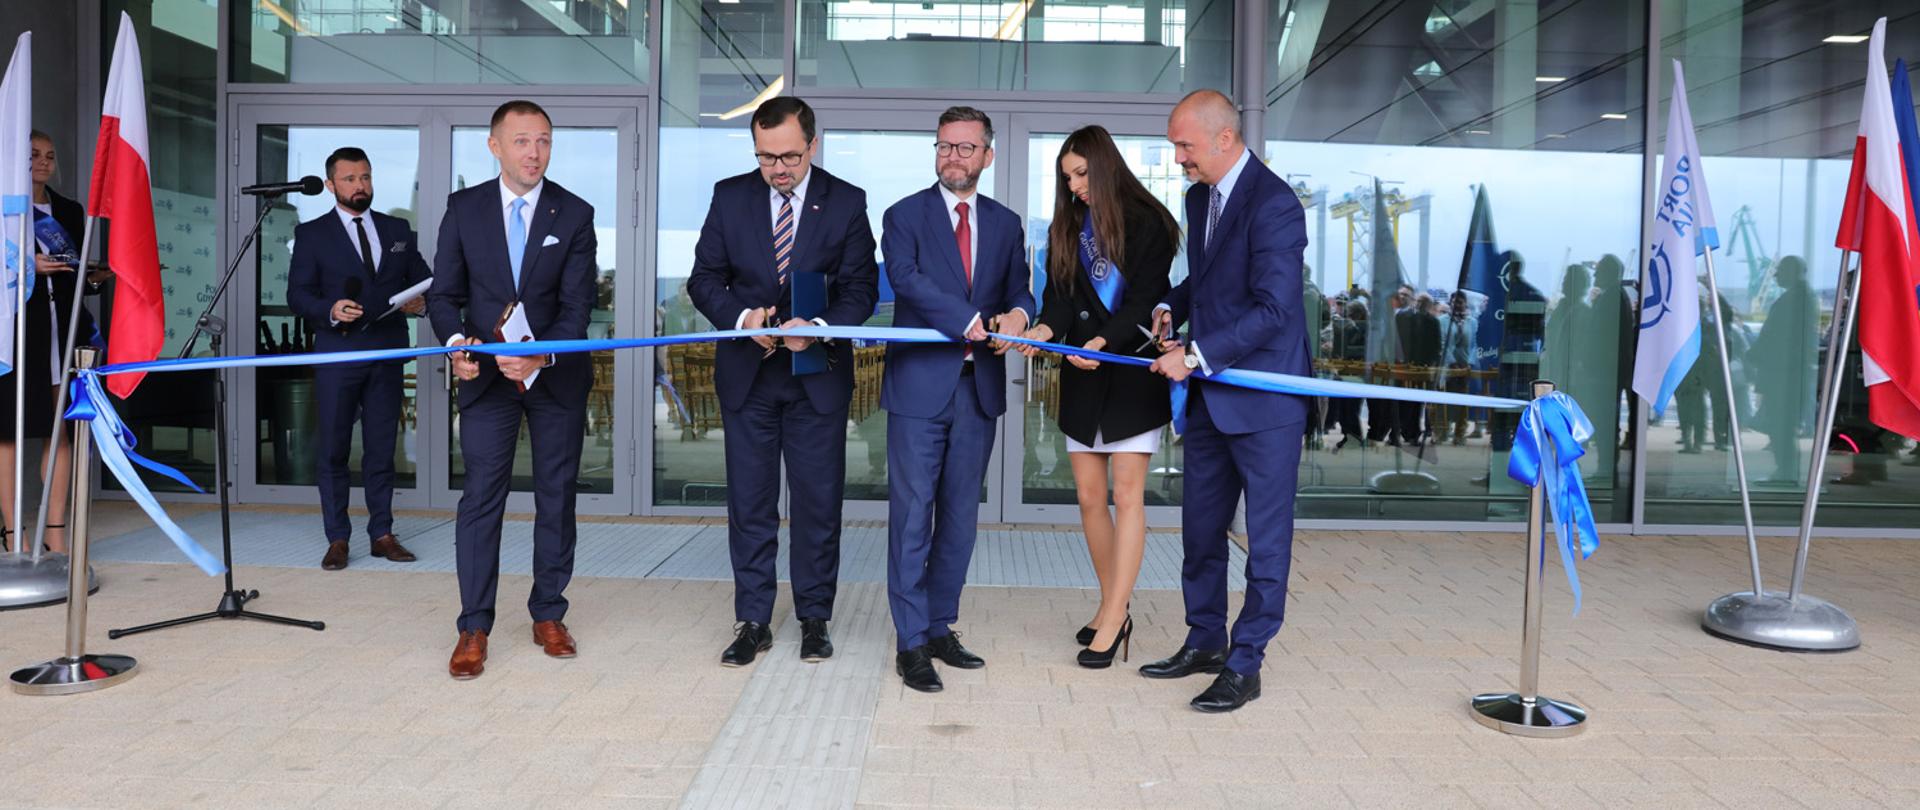 Zakończono budowę publicznego terminalu promowego w Porcie Gdynia [przecięcie wstęgi]